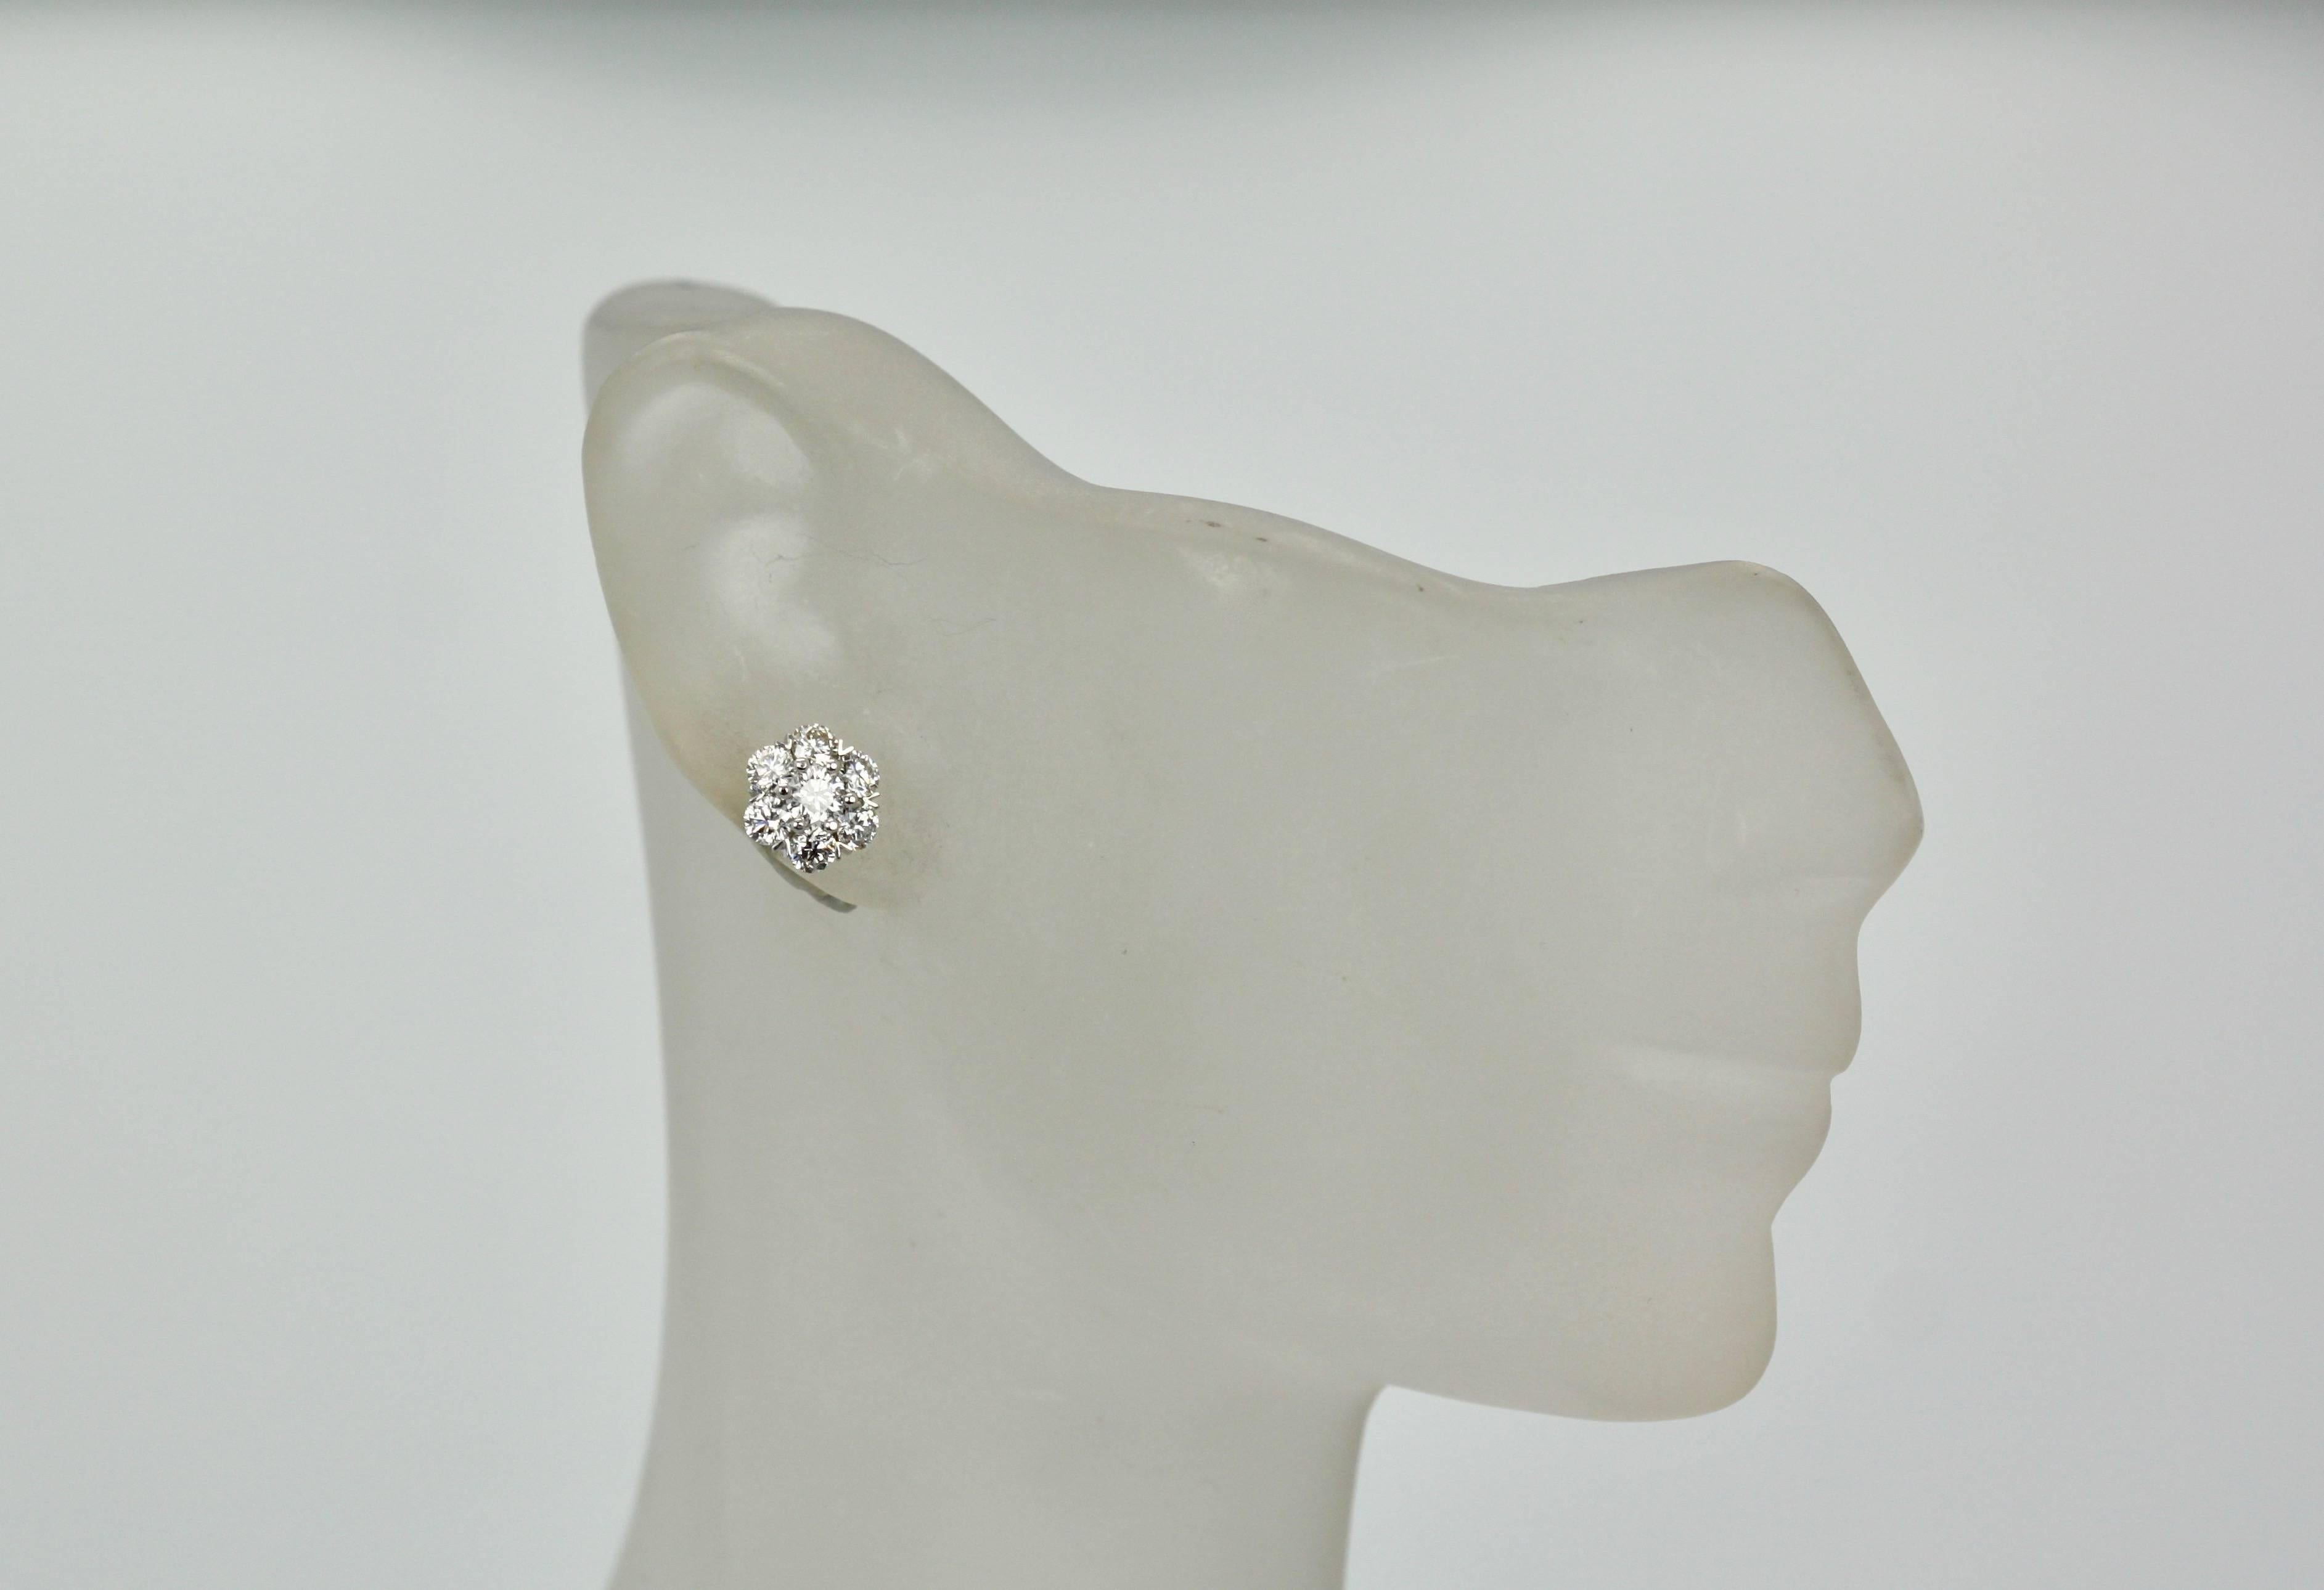 Women's Van Cleef & Arpels Fleurette Earrings Small Ear Studs DEF IF to VVS 1.05 Carat